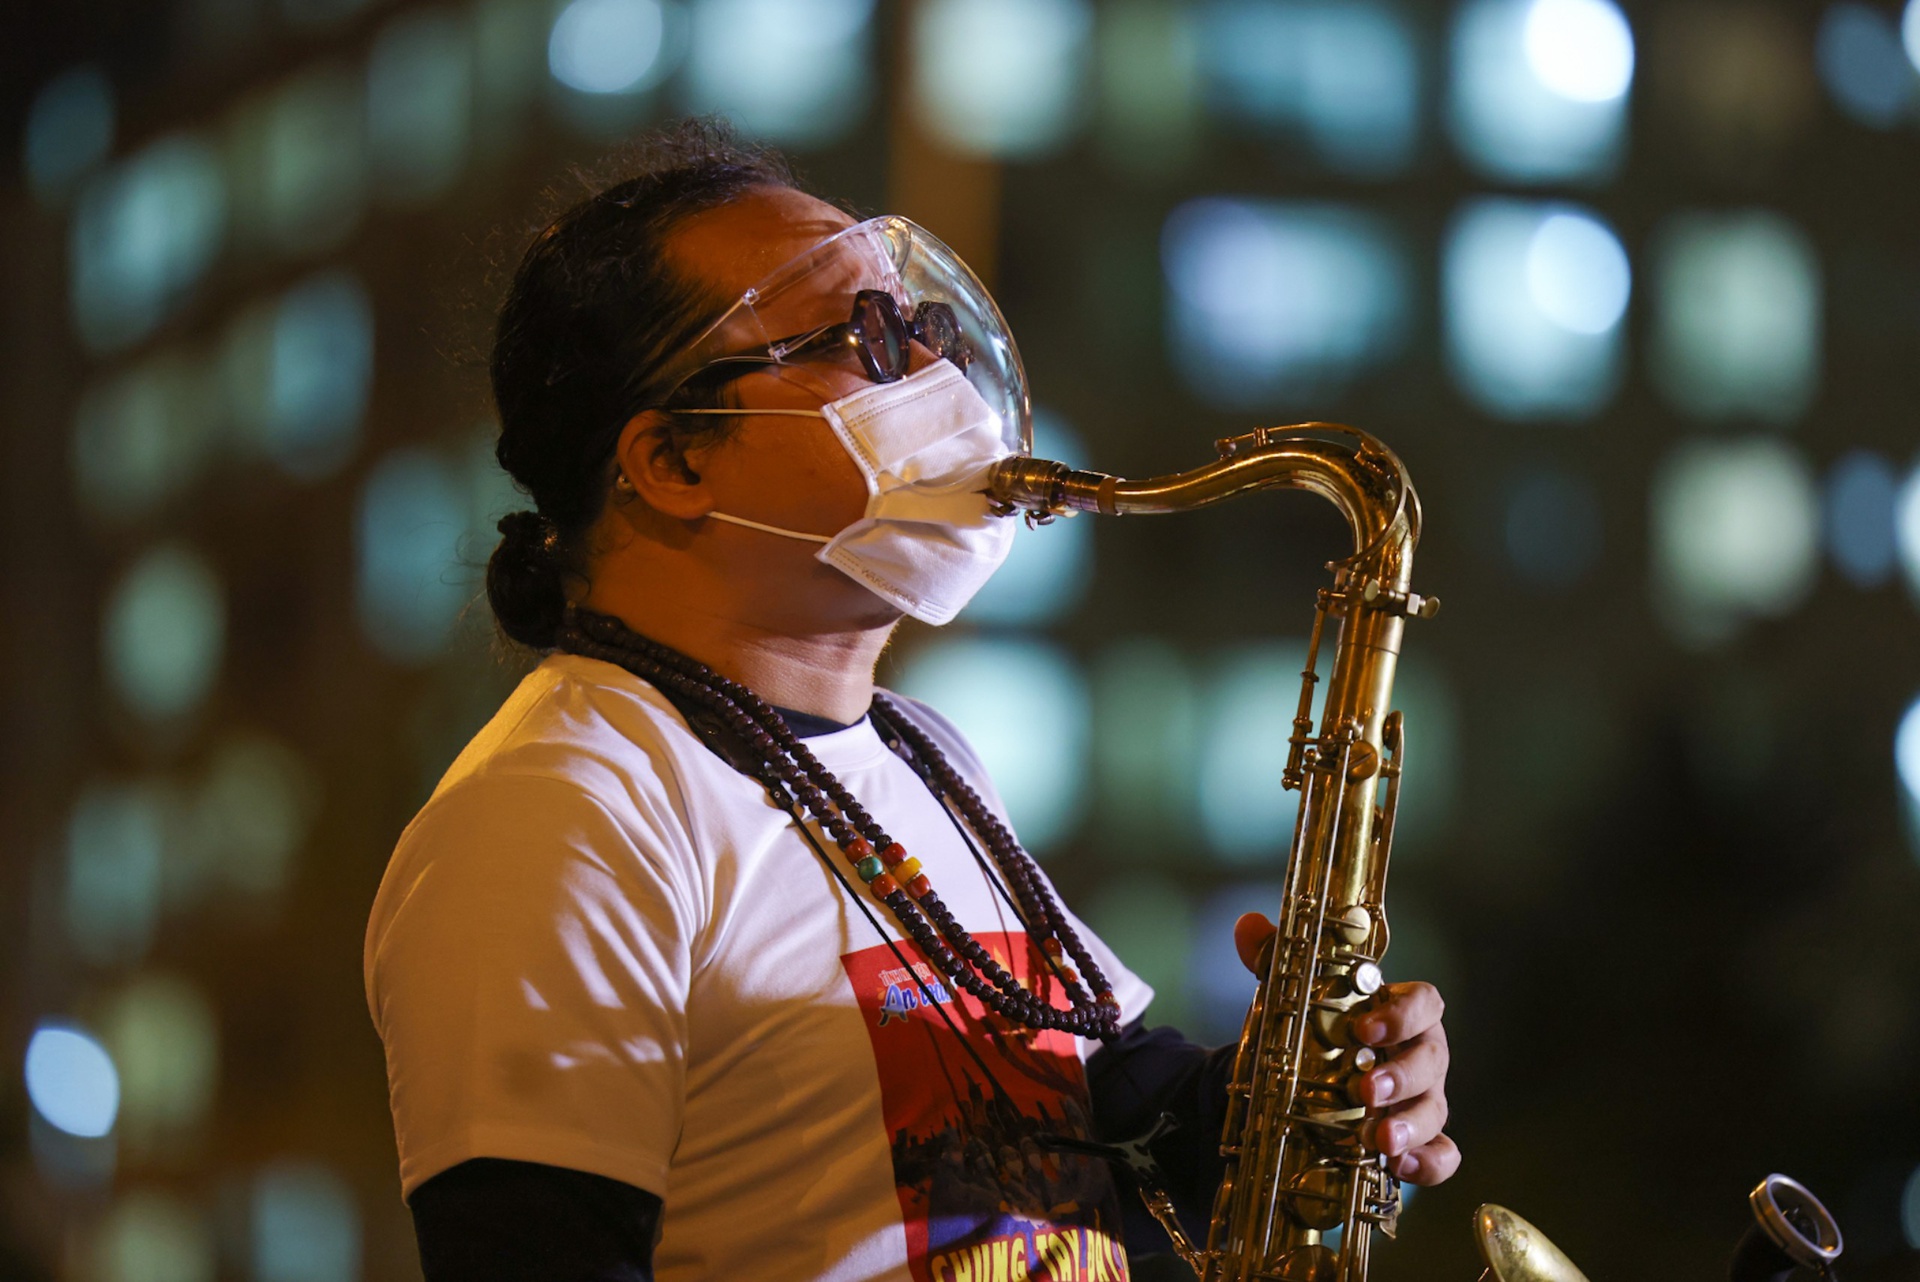 Nghệ sĩ saxophone Trần Mạnh Tuấn bị đột quỵ - Ảnh 1.